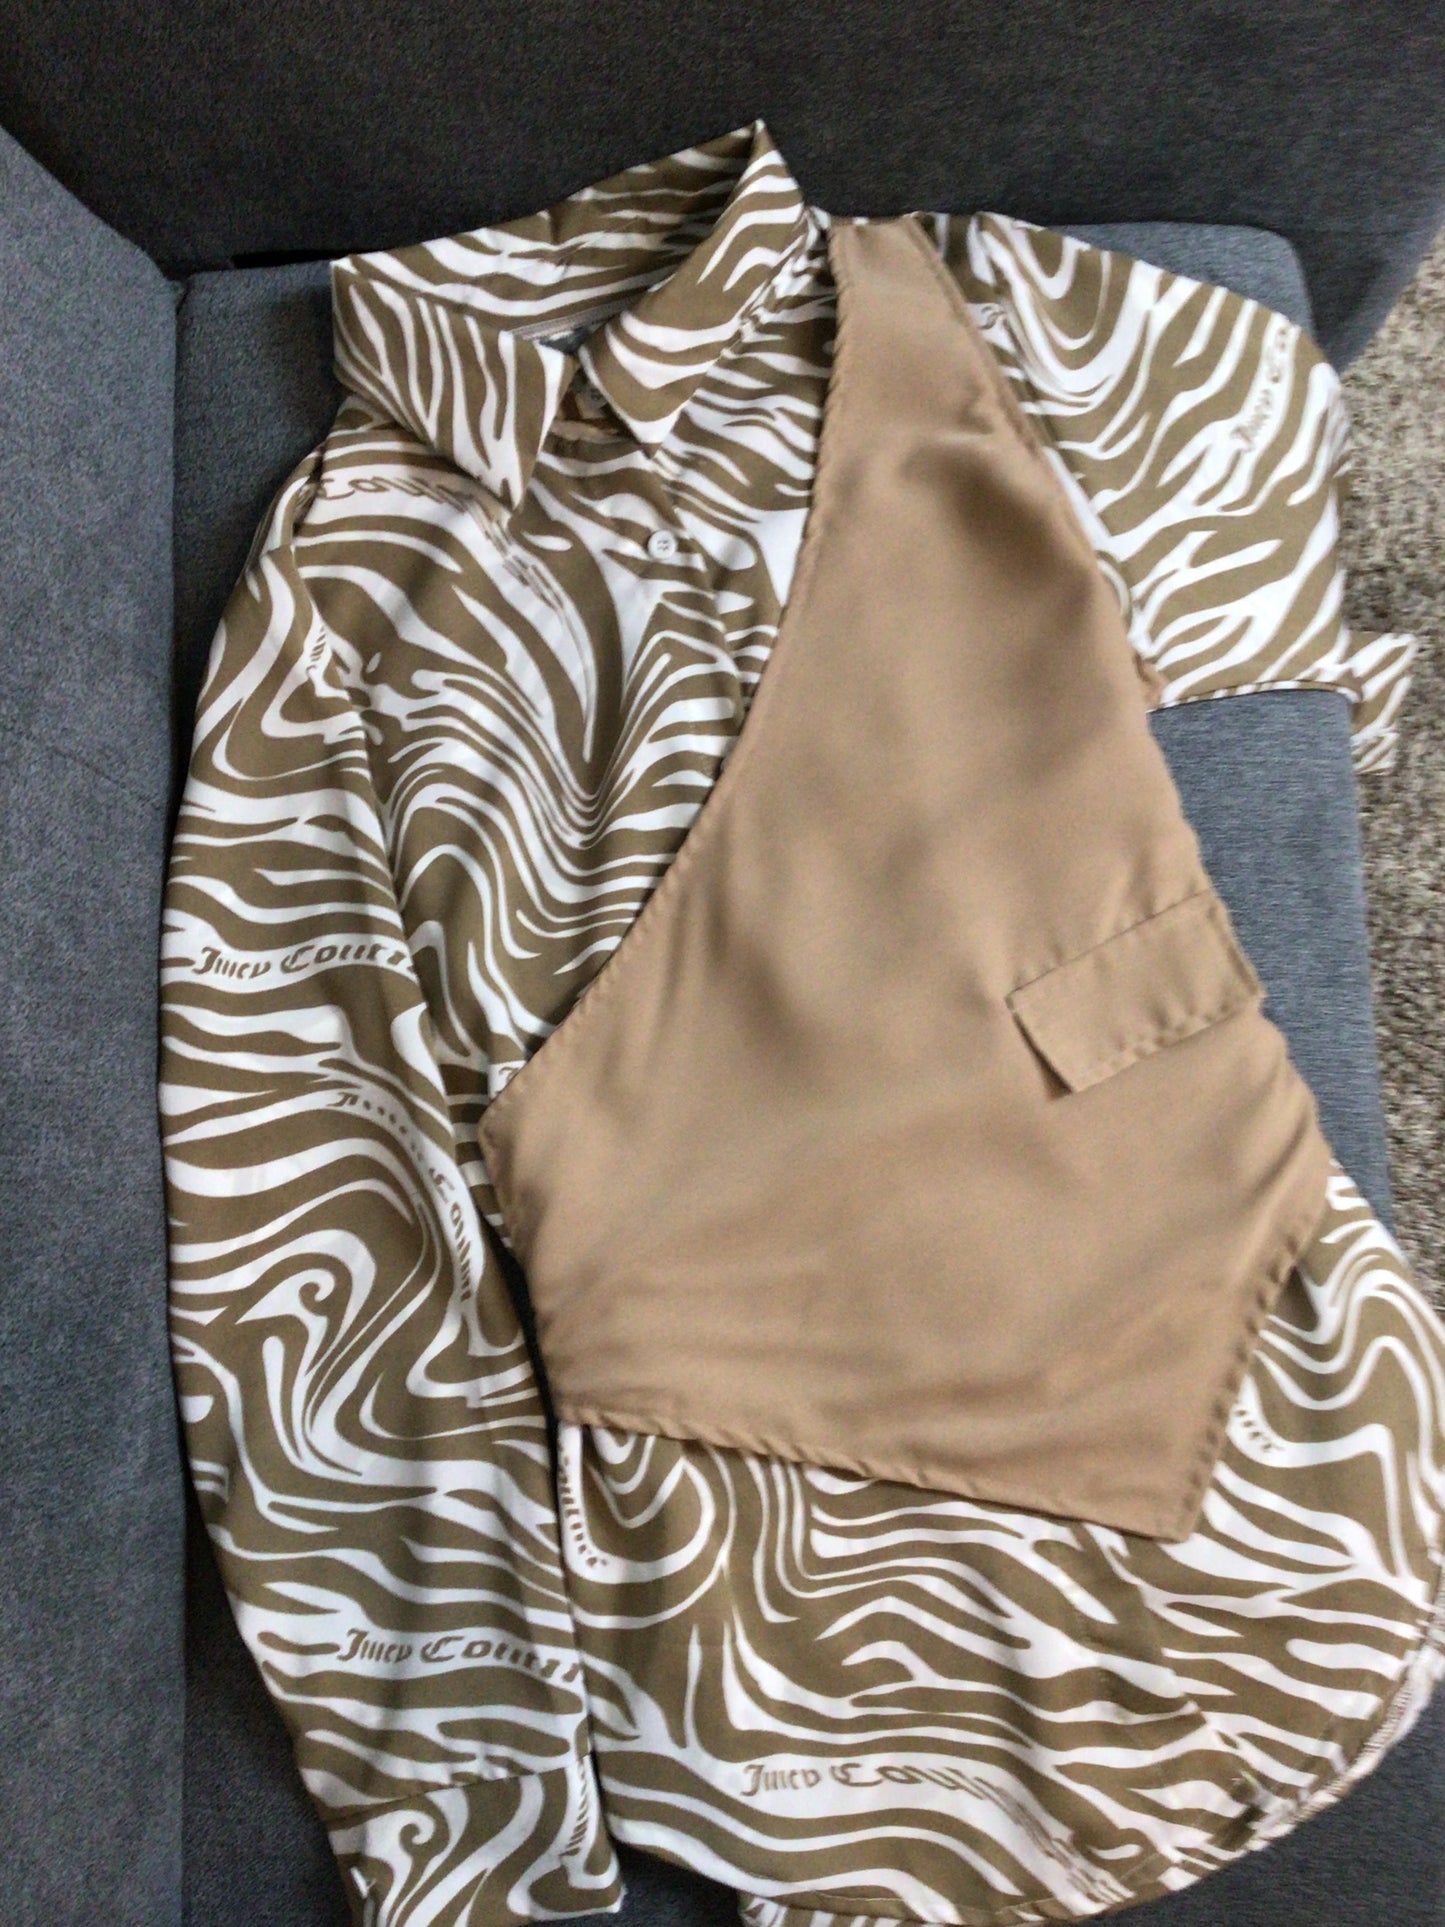 Shirt - Tan & White Zebra Pattern